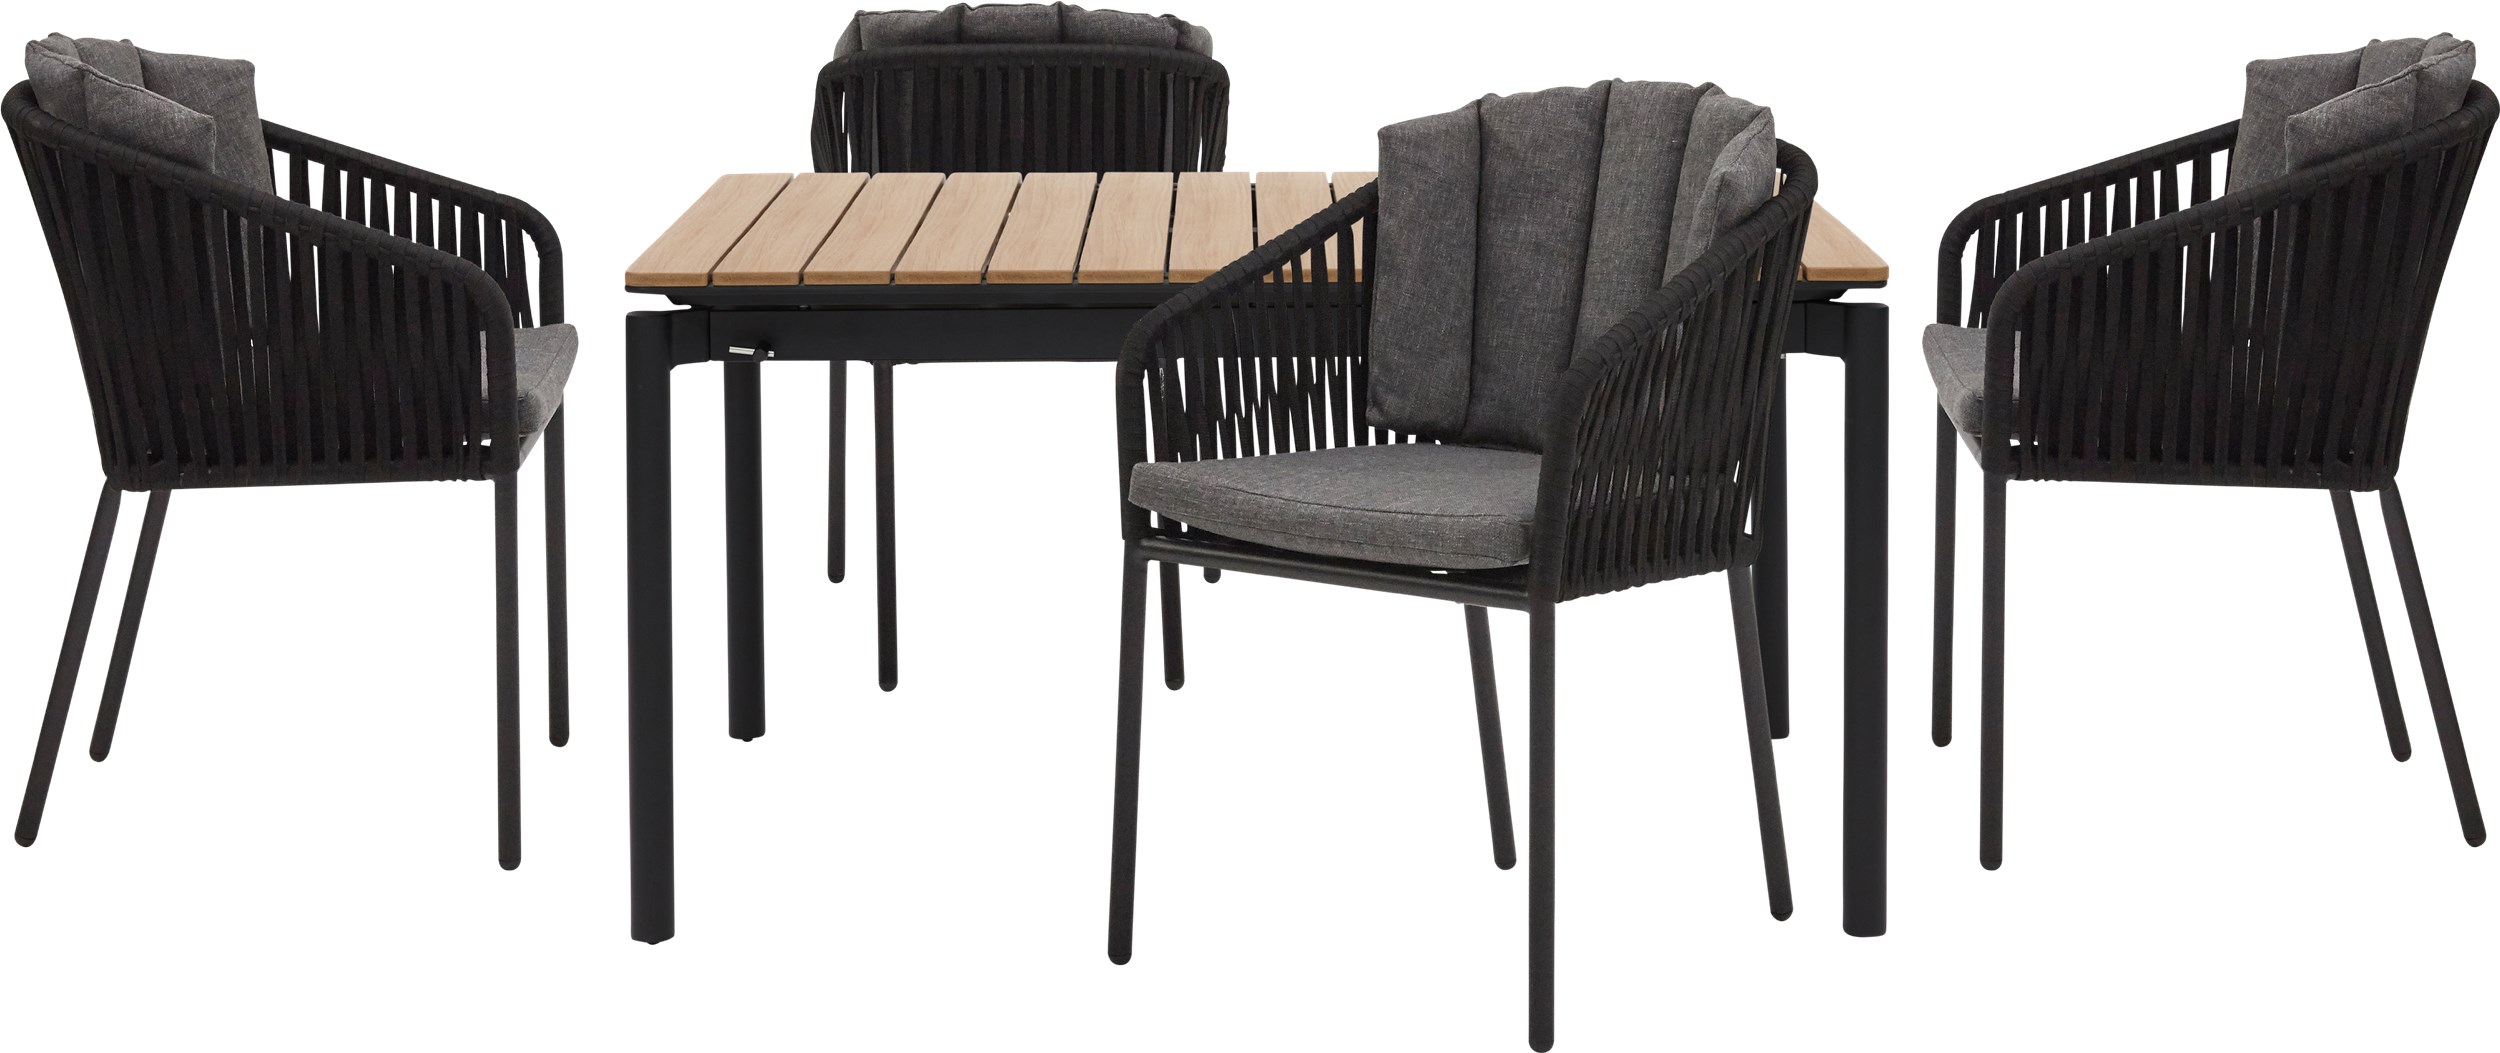 Durano Trädgårdsset med 1 bord natur + 4 stolar svart